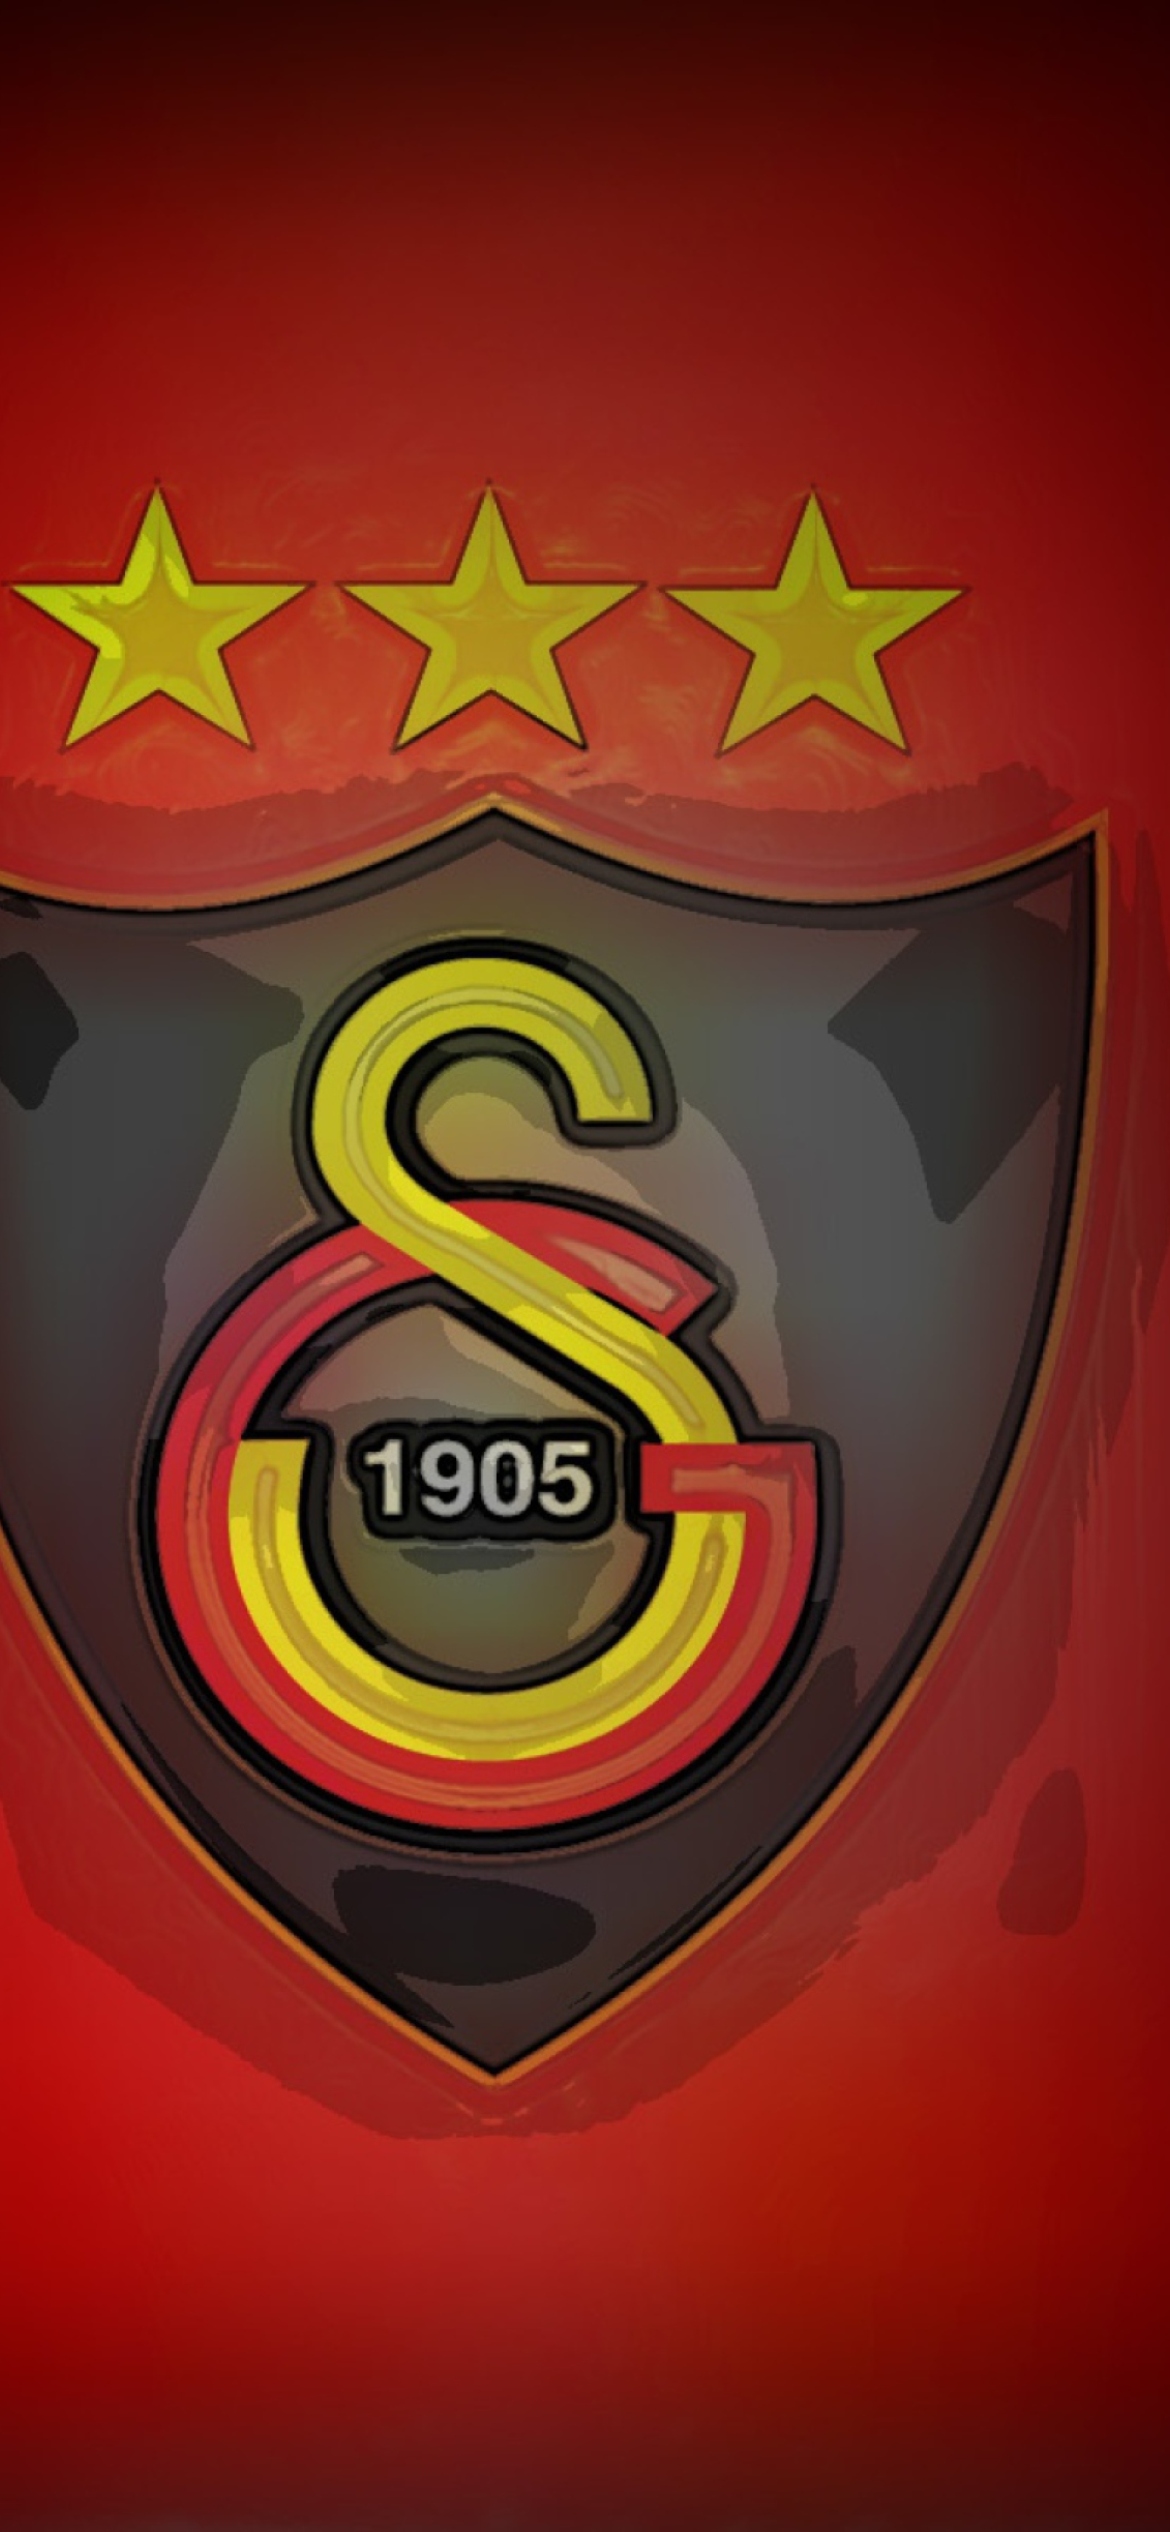 Sfondi Galatasaray 1170x2532